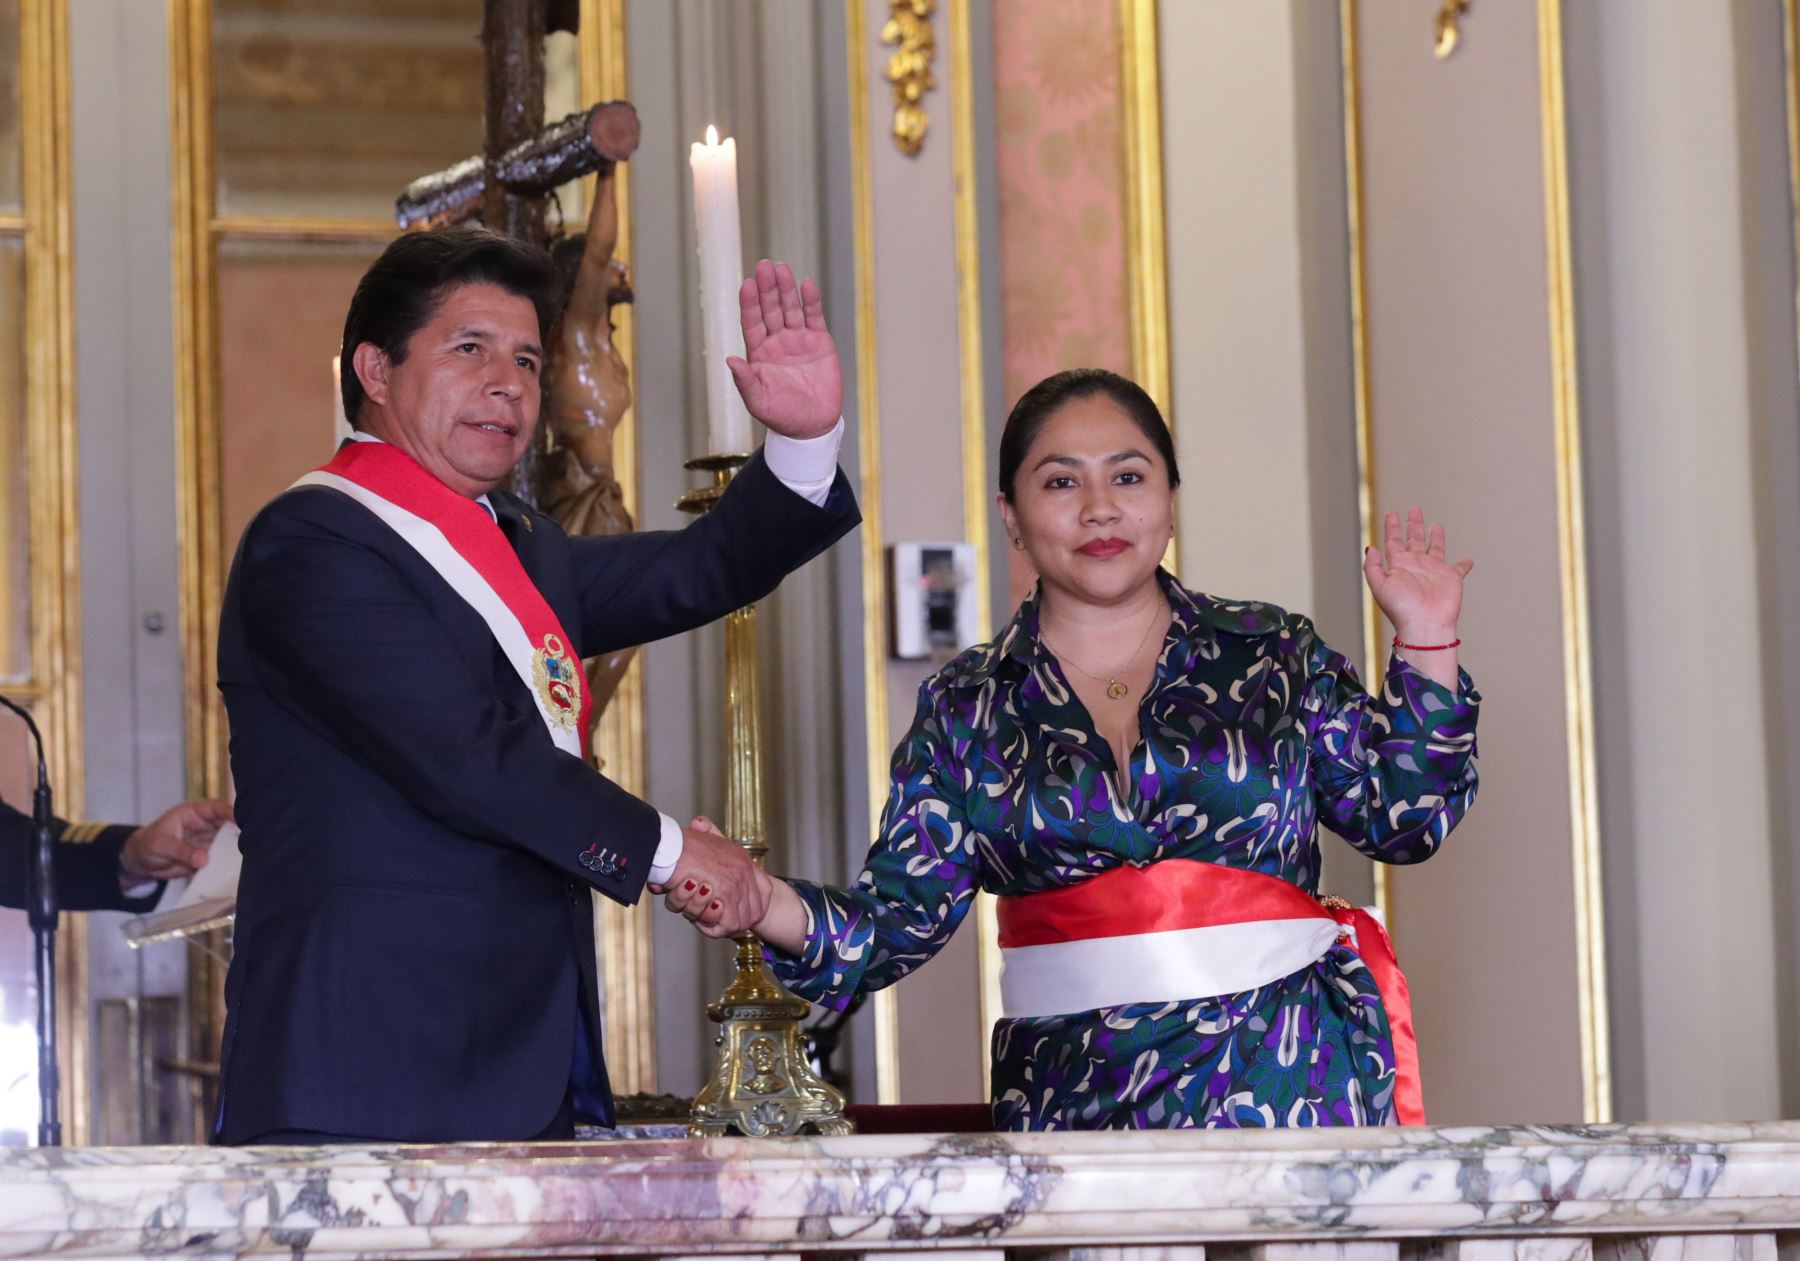 El presidente de la República, Pedro Castillo, tomó juramento a los integrantes del nuevo Gabinete Ministerial, que estará liderado por Betssy Chávez, durante una ceremonia que se realizó en Palacio de Gobierno. Foto: PCM